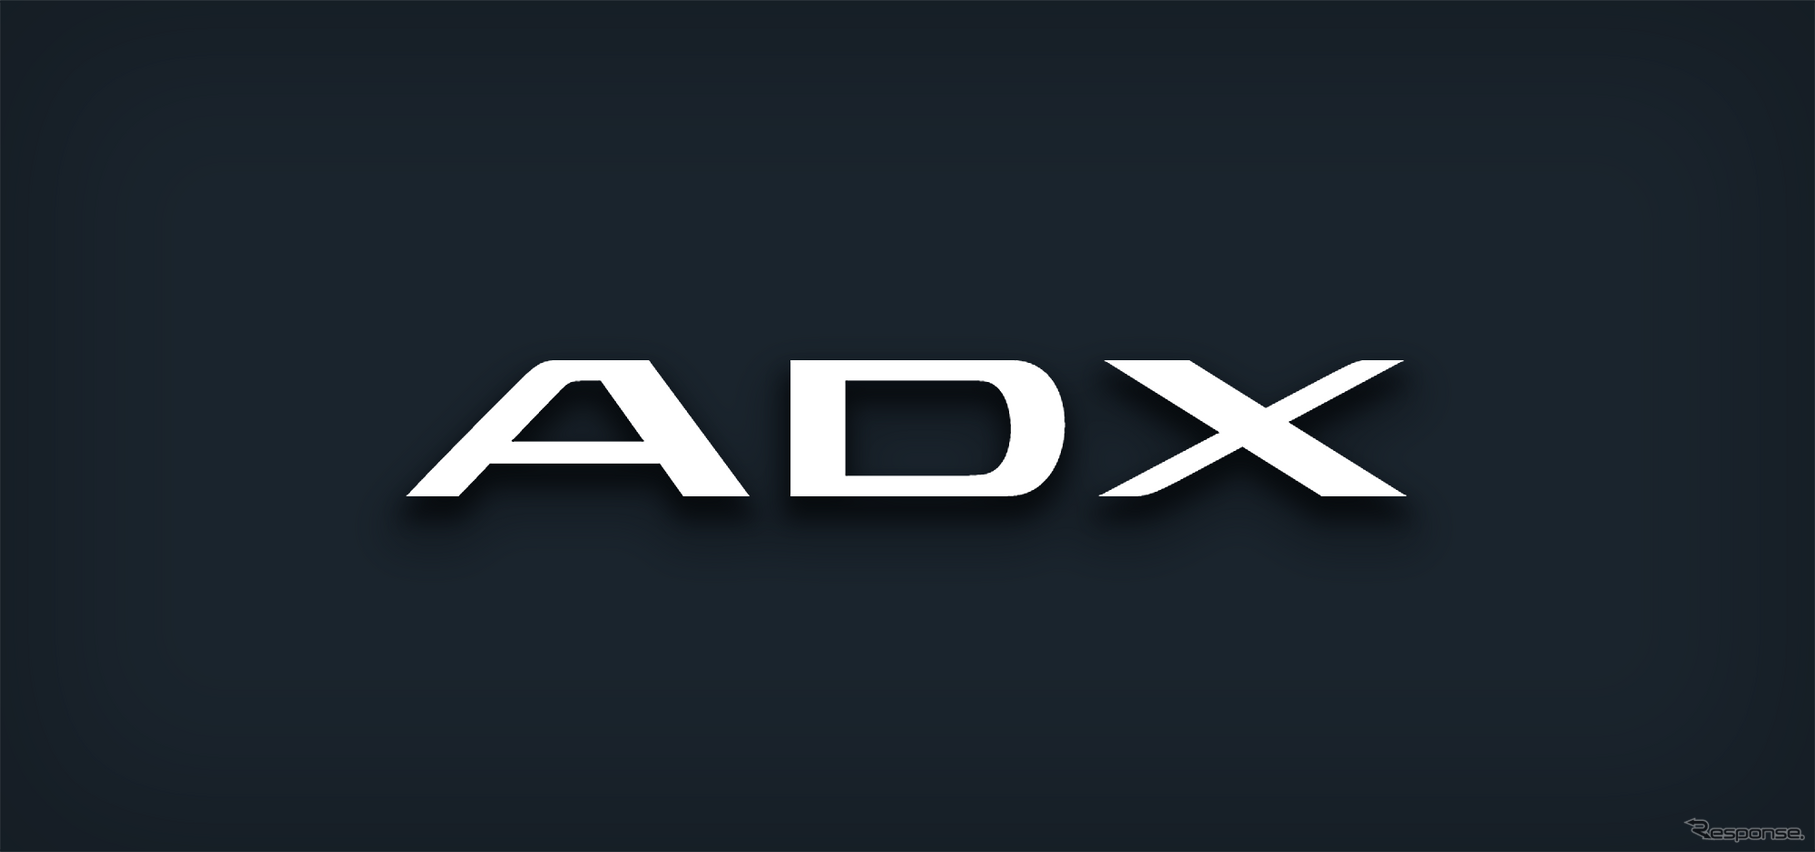 アキュラADXのロゴ